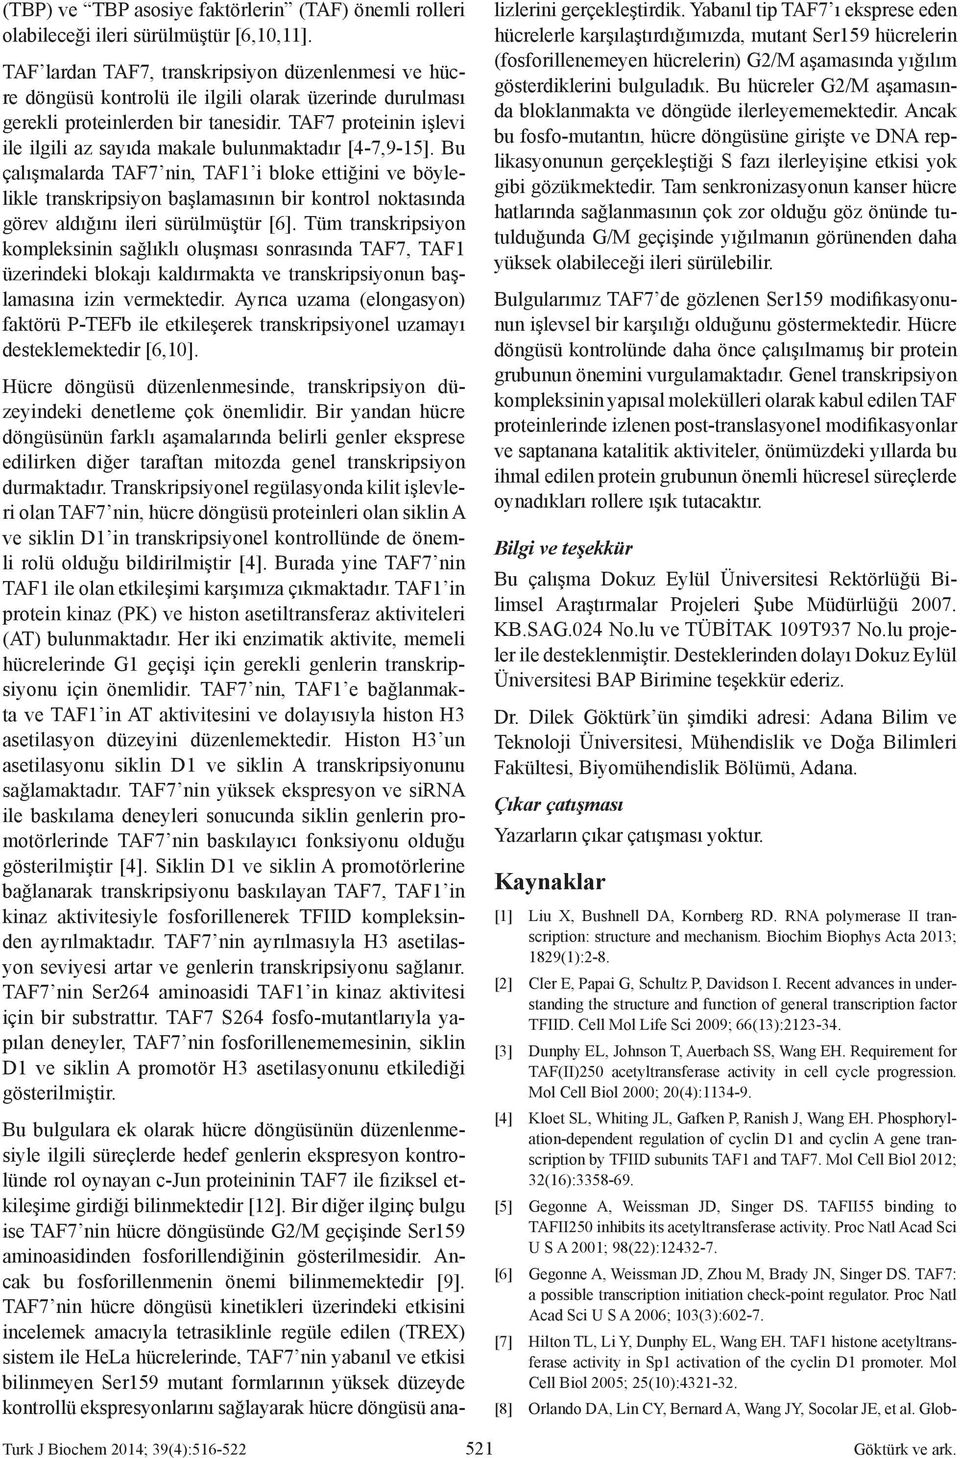 TAF7 proteinin işlevi ile ilgili az sayıda makale bulunmaktadır [4-7,9-5].